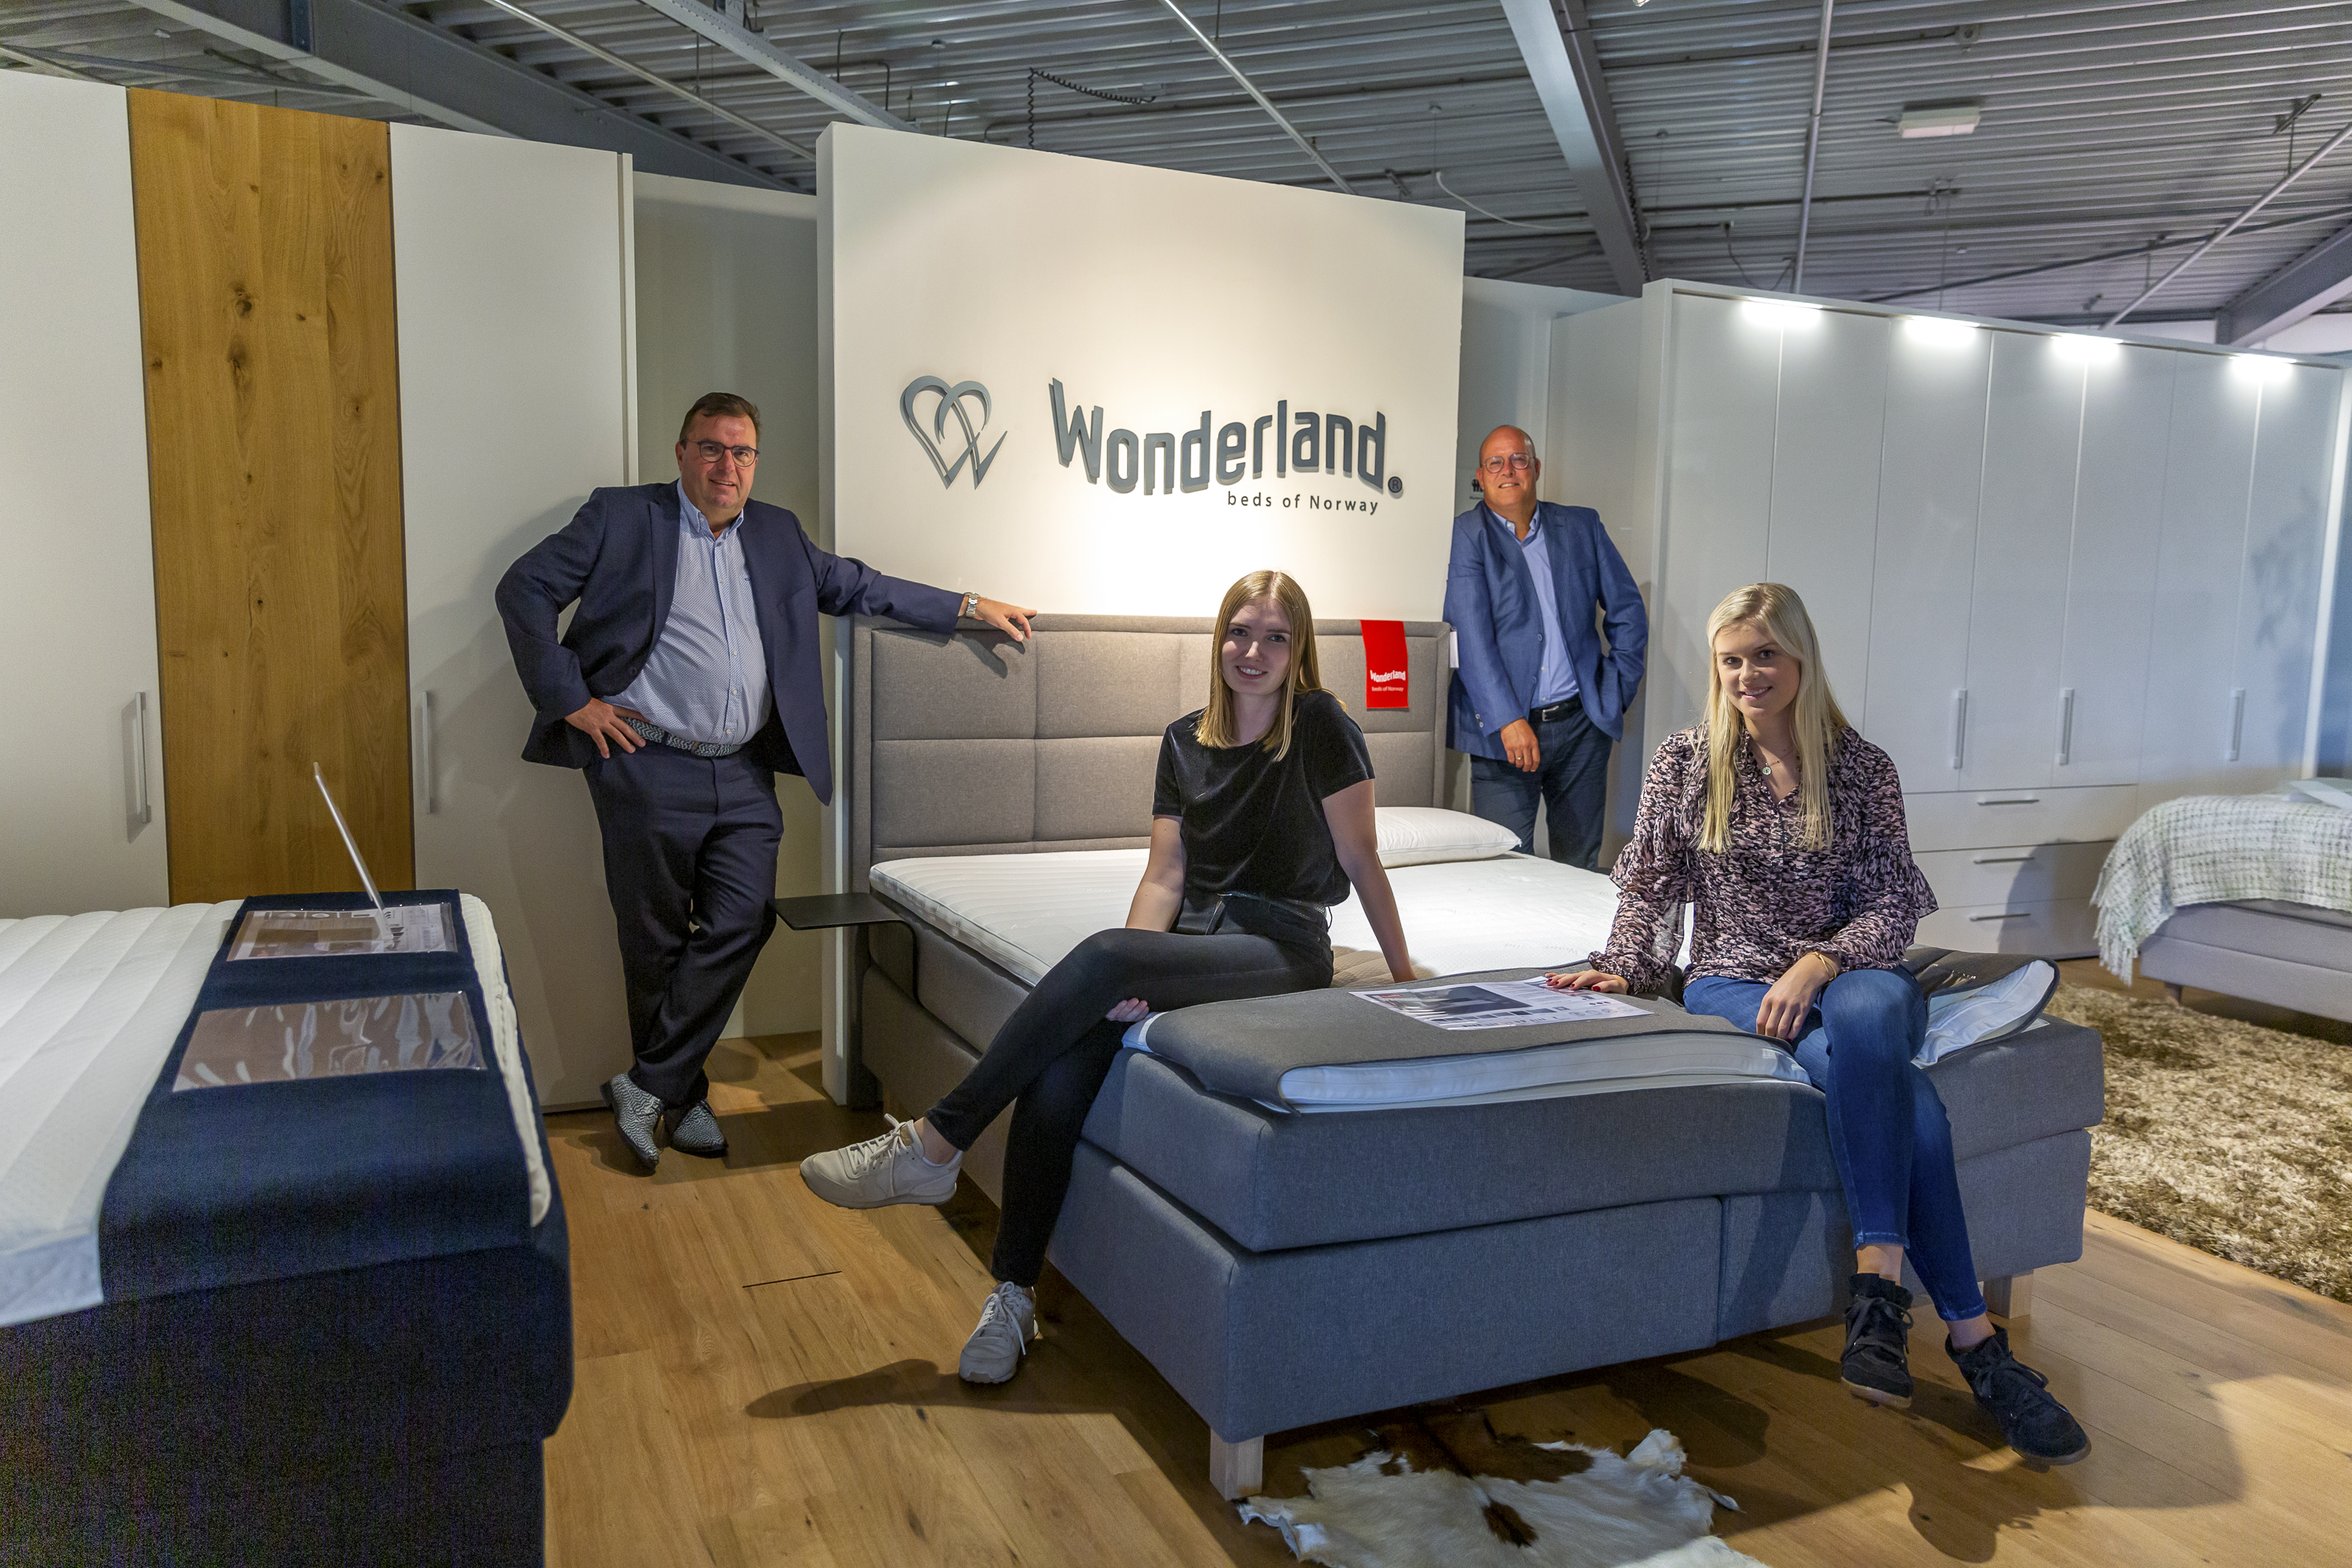 Wonderland - Beds of Norway wil door de samenwerking met professioneel Social Media bureau DeMarktwijzer heel Nederland veroveren!